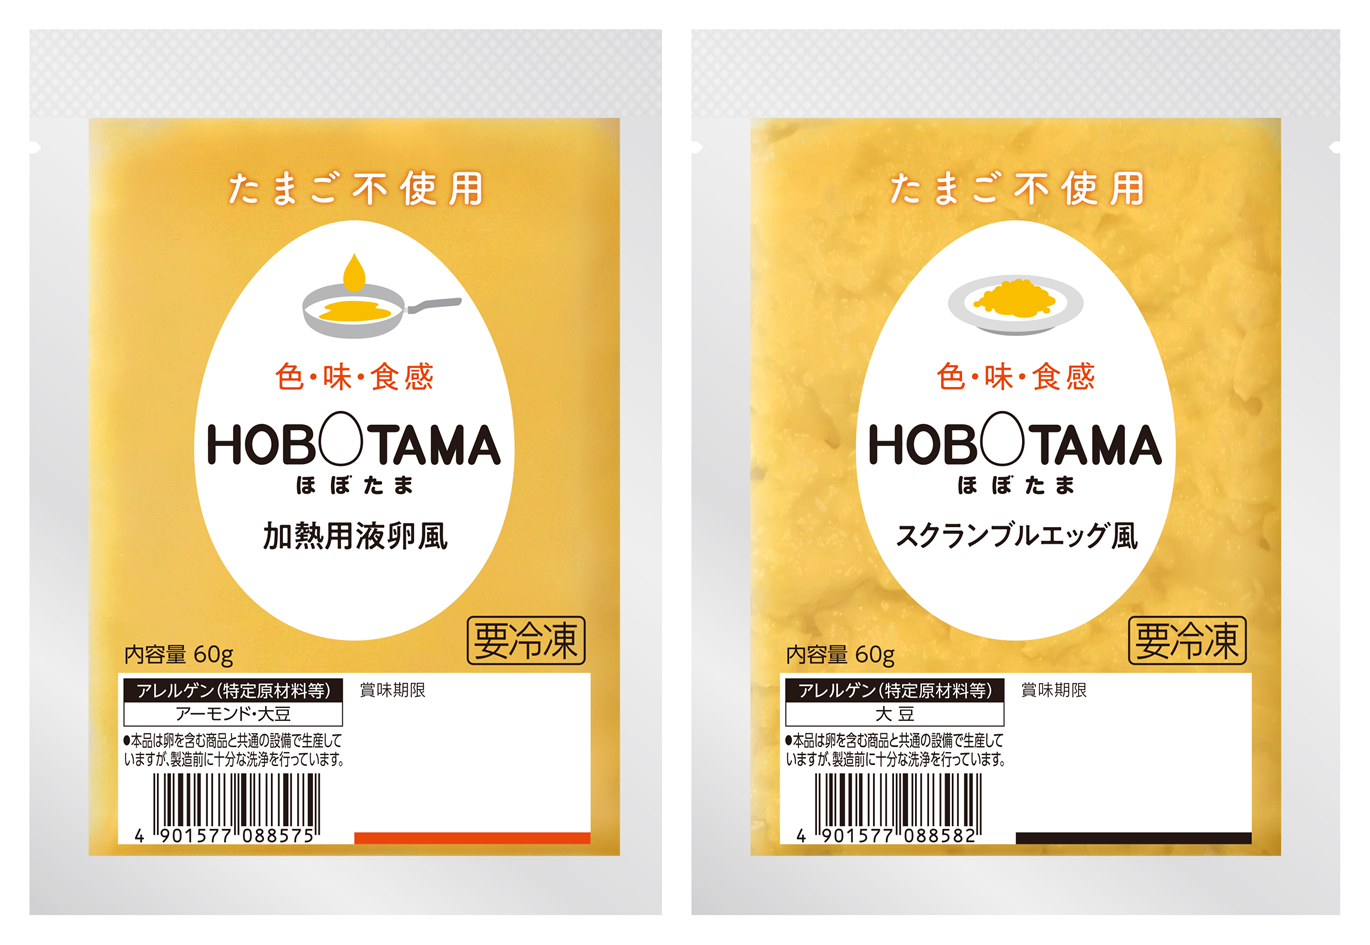 市販用でもプラントベースフードを展開 プラントベースフード第二弾 Hobotama 加熱用液卵風 と Hobotama スクランブルエッグ風 の2品を新発売 キユーピー株式会社のプレスリリース